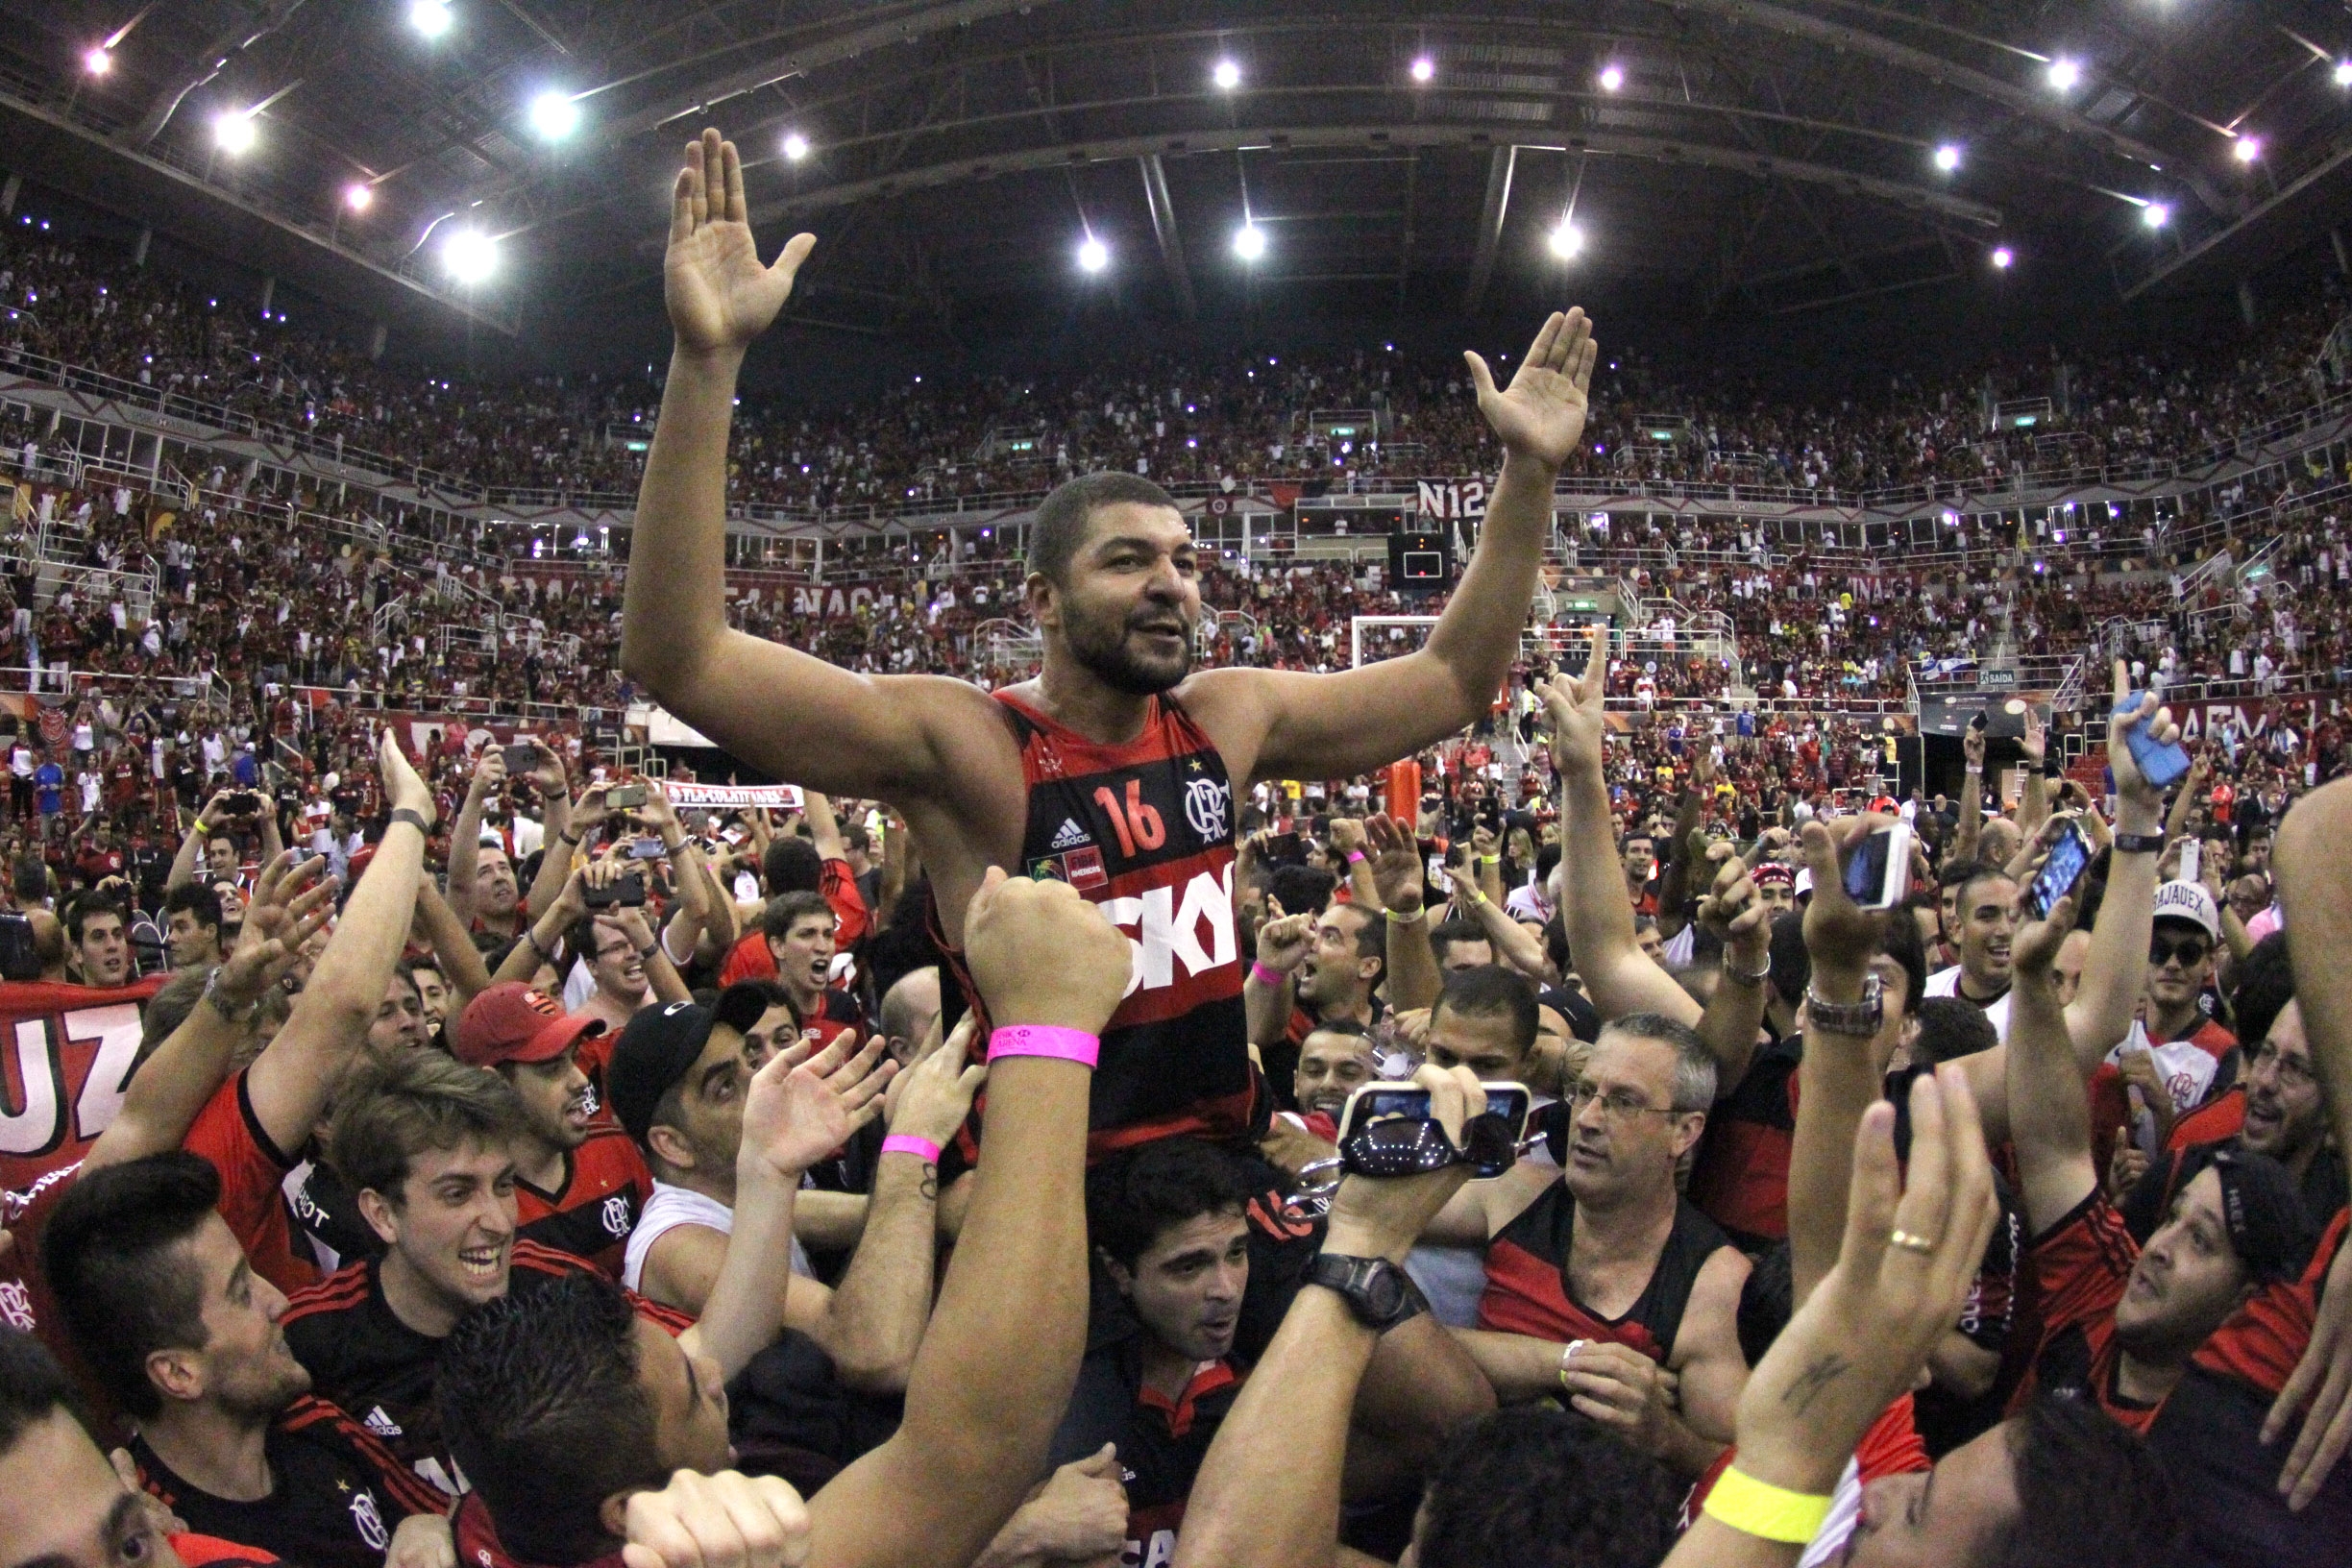 Campeão mundial de 2014, Flamengo iguala feito alcançado pelo Sírio em 1979 (Gilvan de Souza/Flamengo)